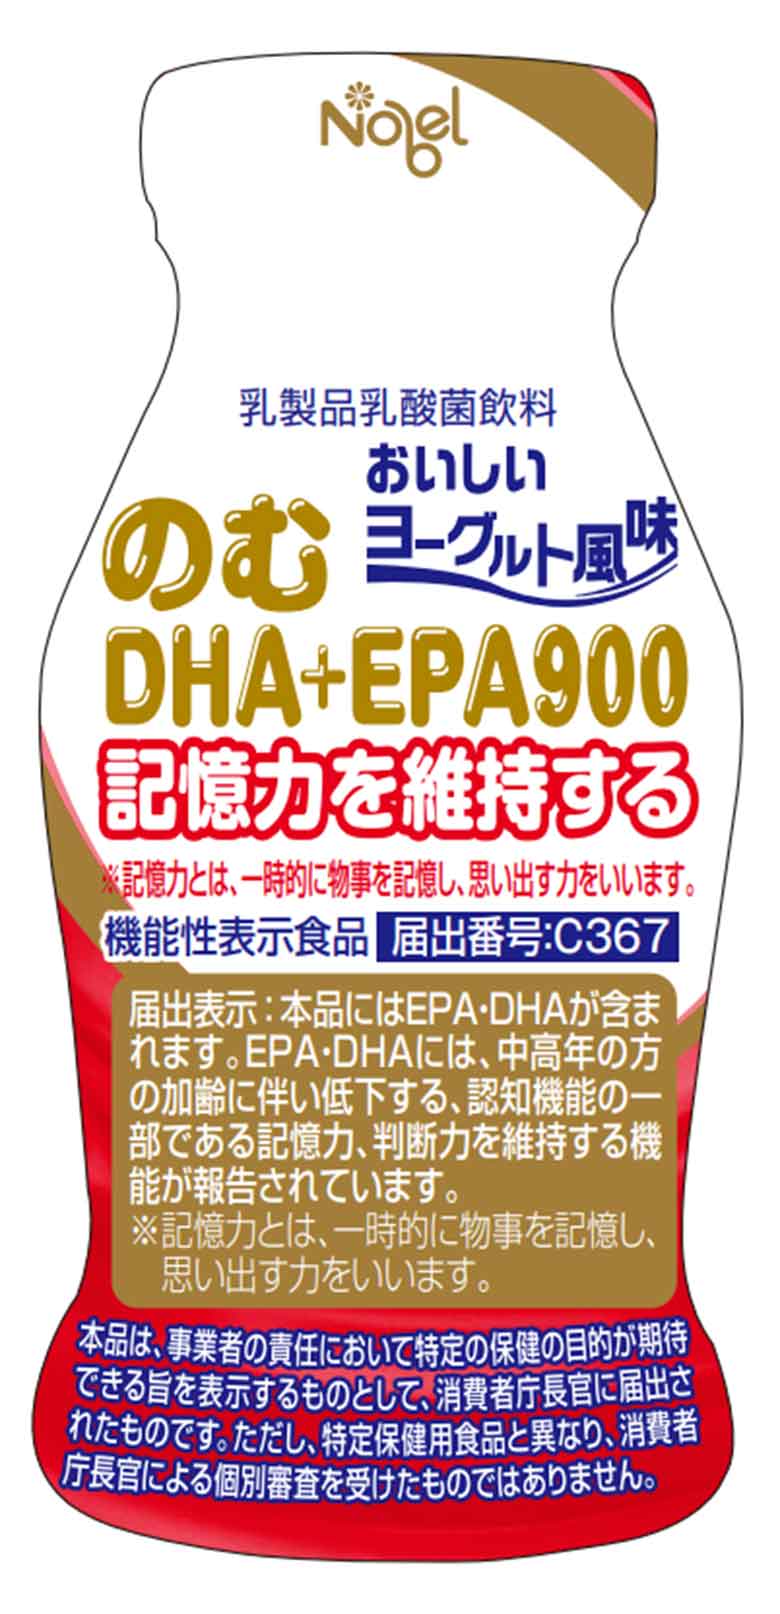 のむDHA+EPA(ディーエイチエープラスイーピーエー)900